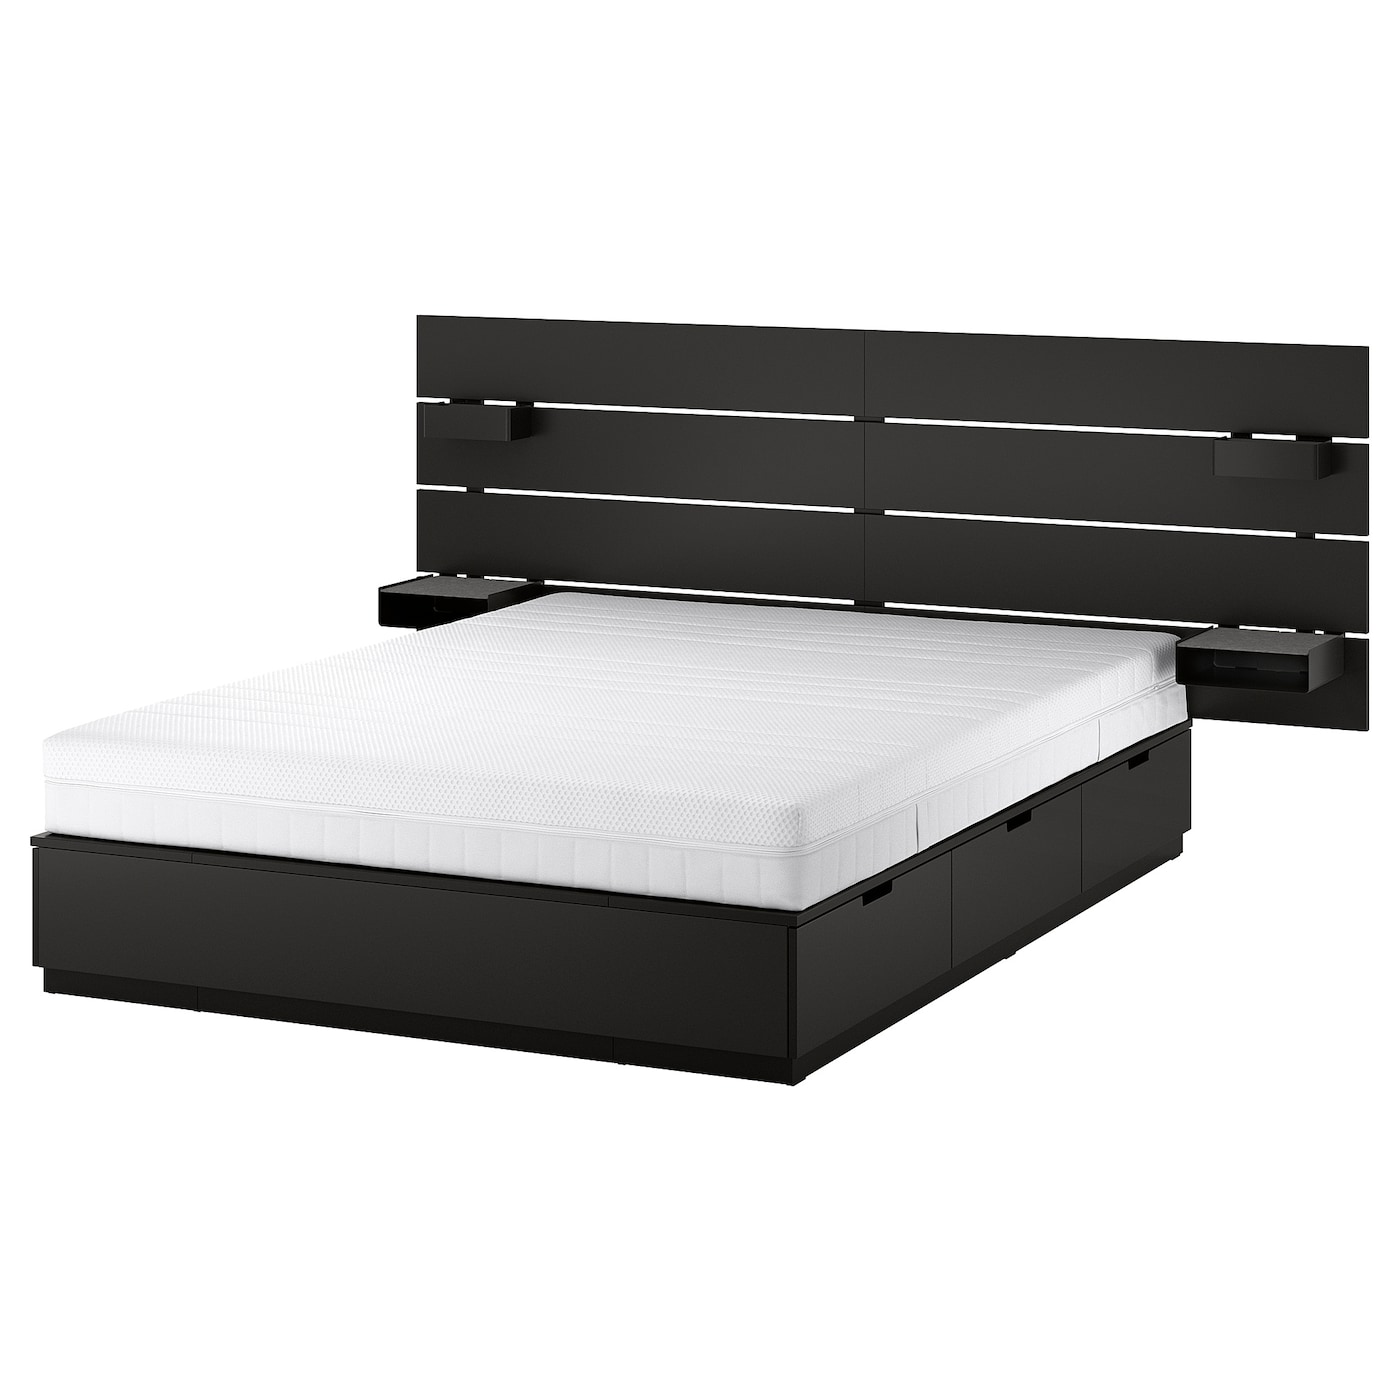 Каркас кровати с контейнером и матрасом - IKEA NORDLI, 200х160 см, матрас средне-жесткий, черный, НОРДЛИ ИКЕА